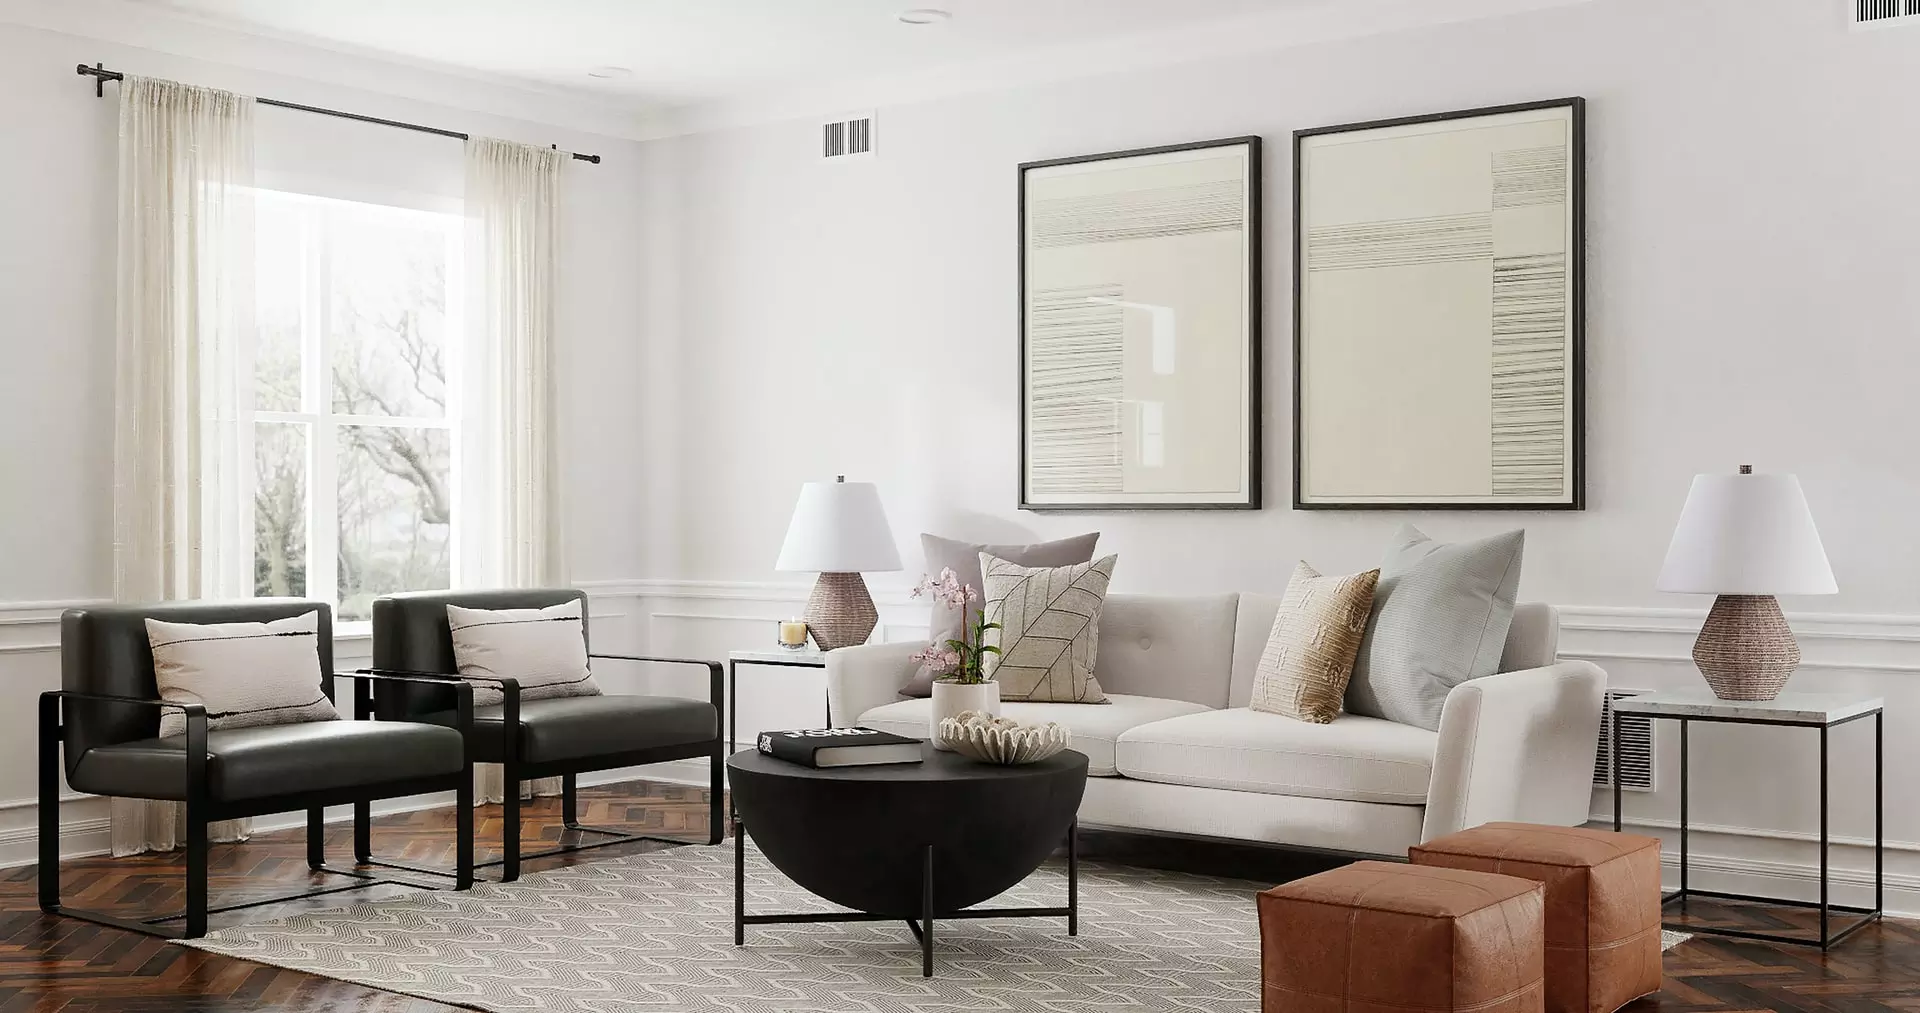 Inspirational Living Room Makeover Ideas